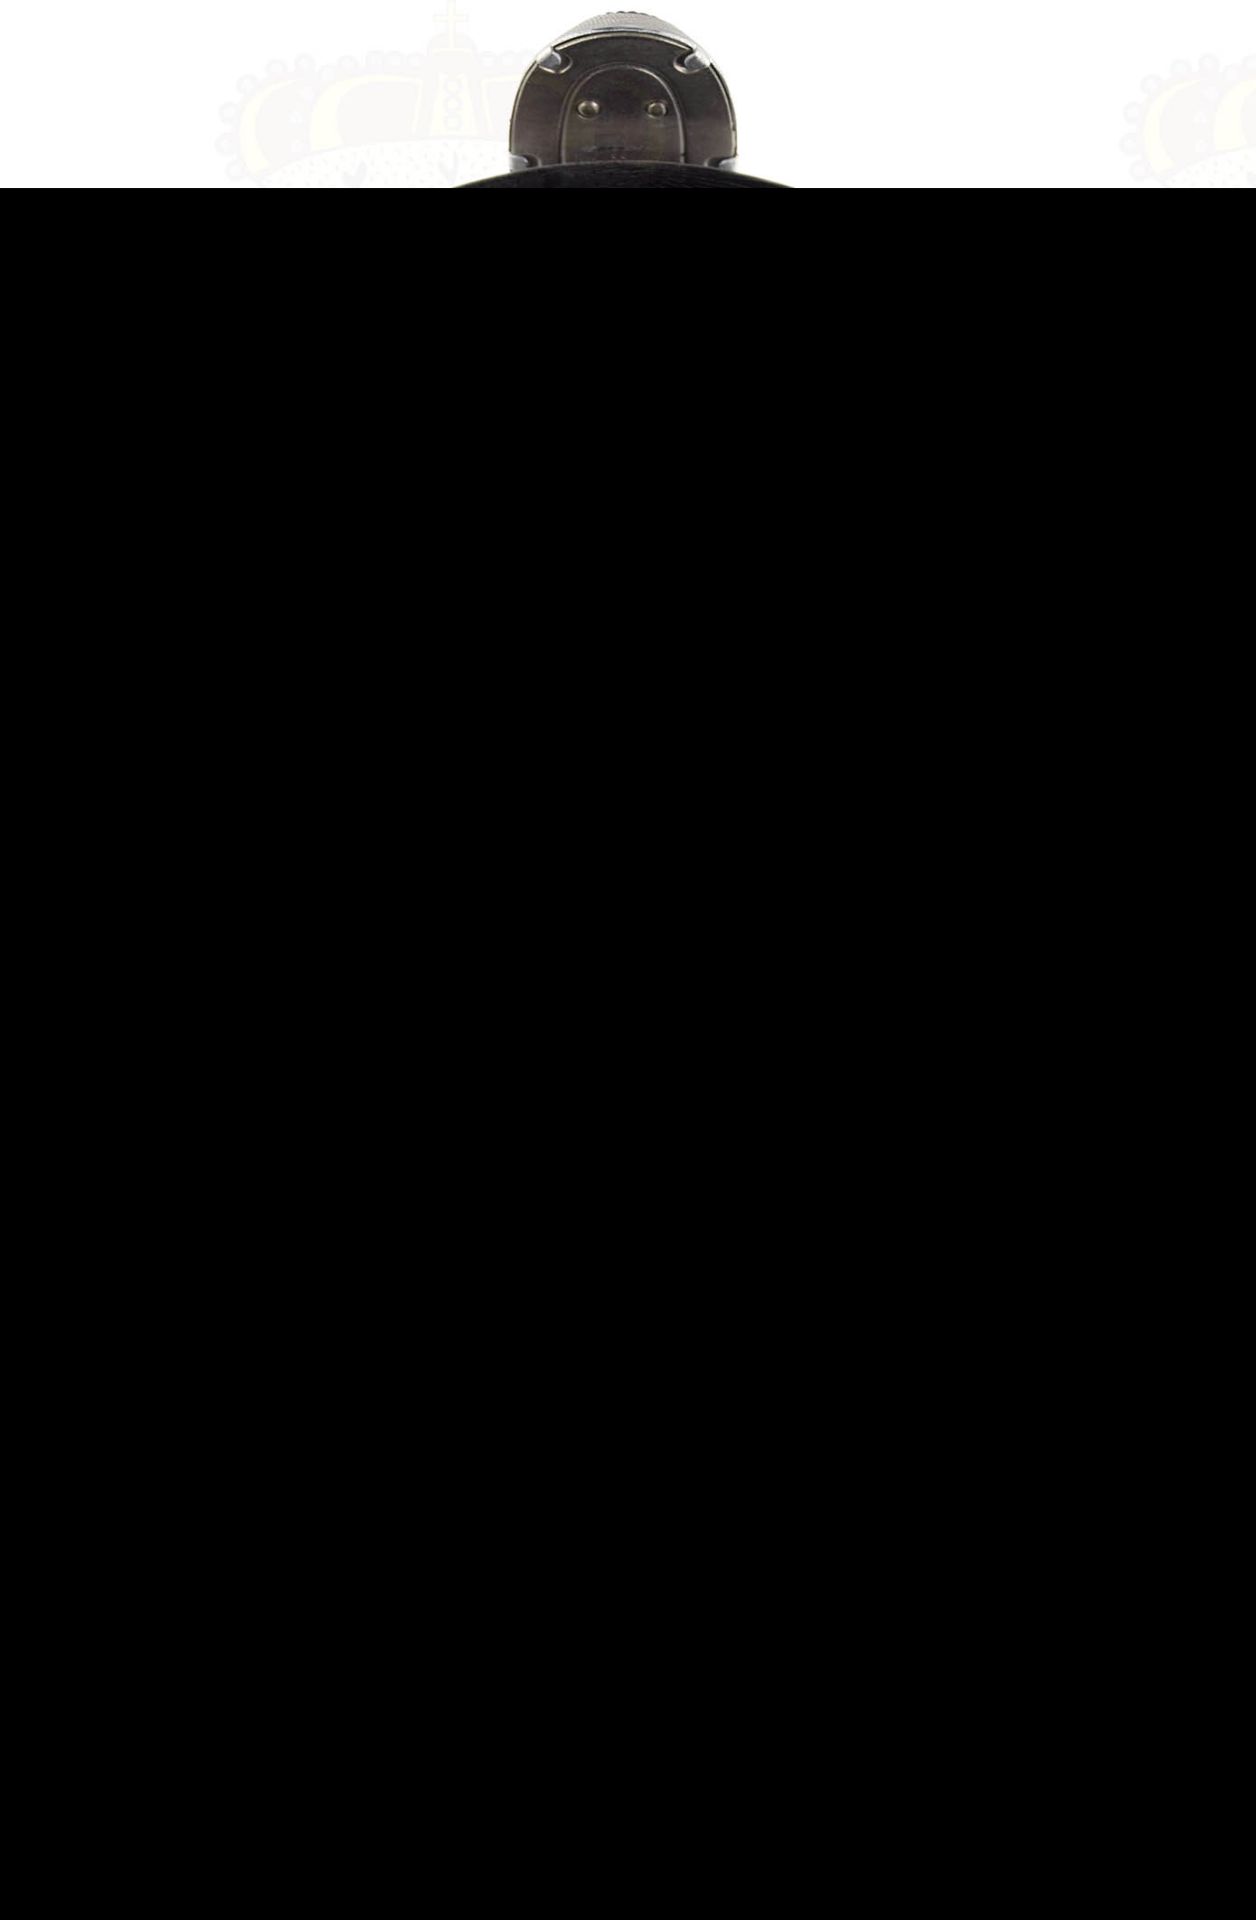 TSCHAKO POLIZEI-RESERVE, für Mannschaften, schwarzer Fiberkorpus, seitlich je 2 Lüftungssiebe, - Bild 4 aus 4